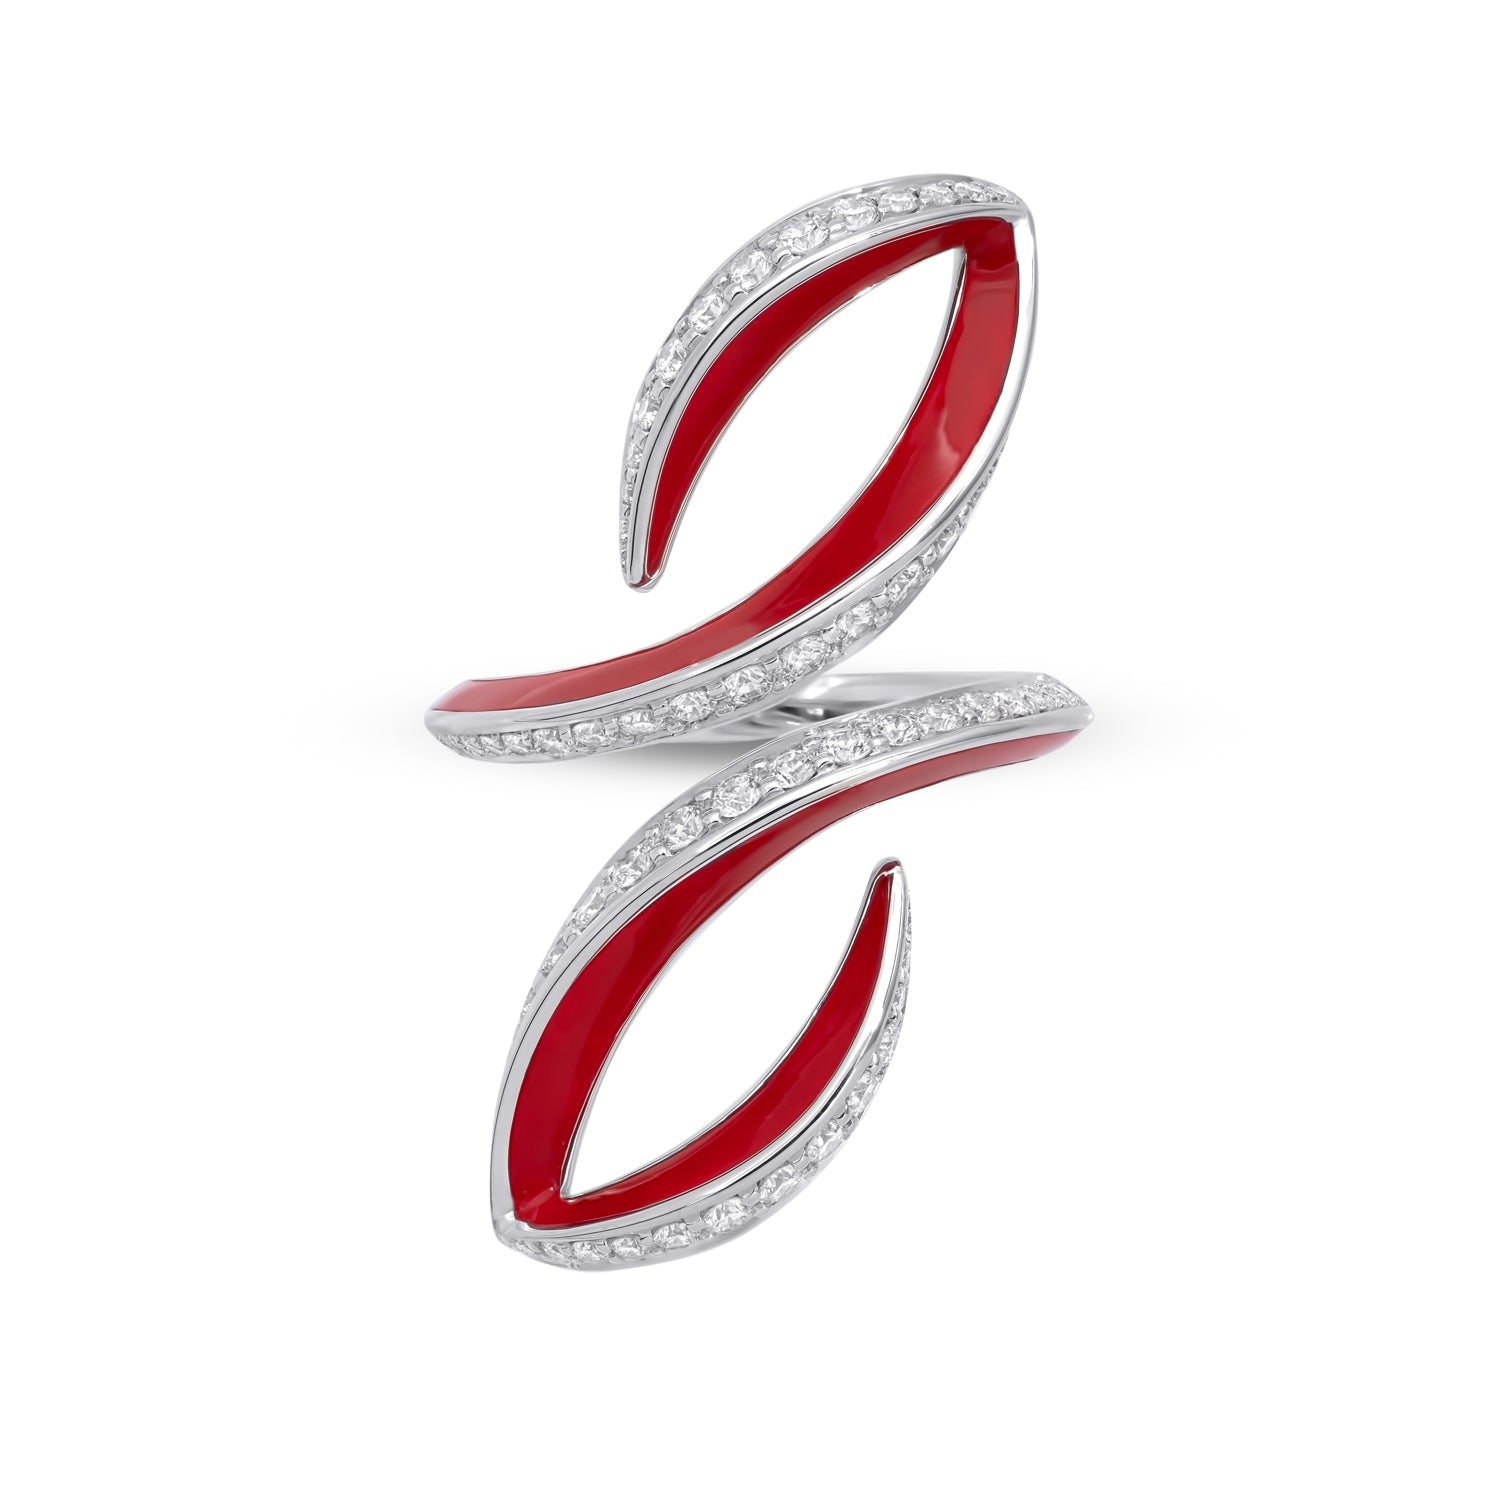 VIVA doppelt geschwungener Ring mit Diamanten und roter Emaille